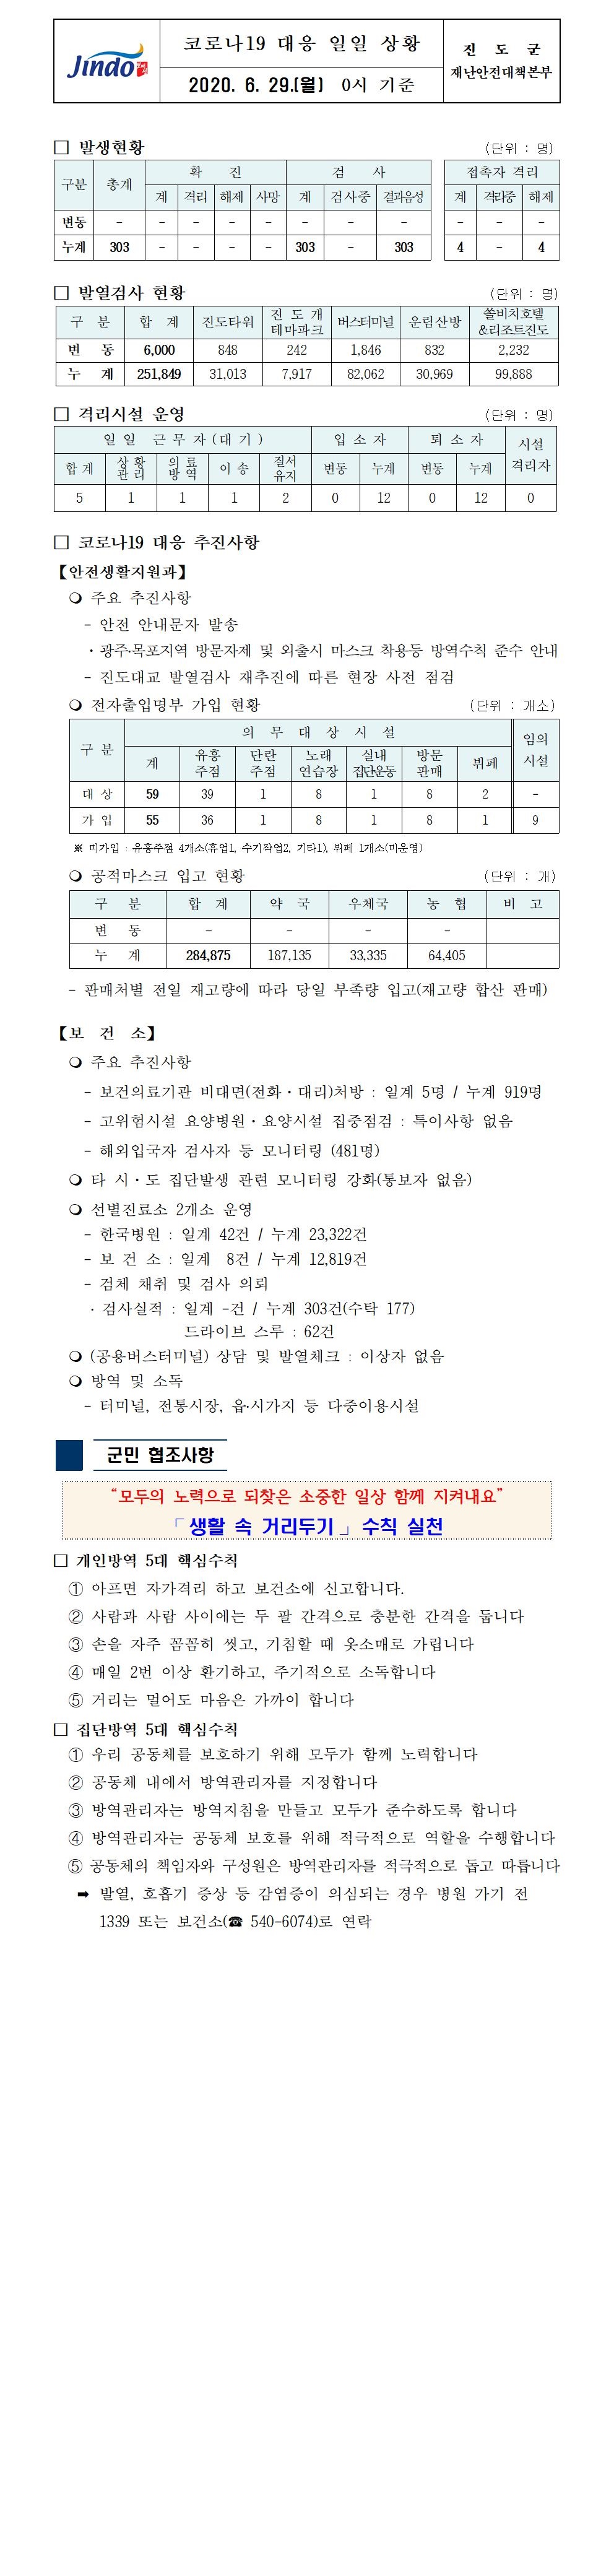 코로나19대응 일일 상황 보고(6월 29일 0시 기준) 첨부#1